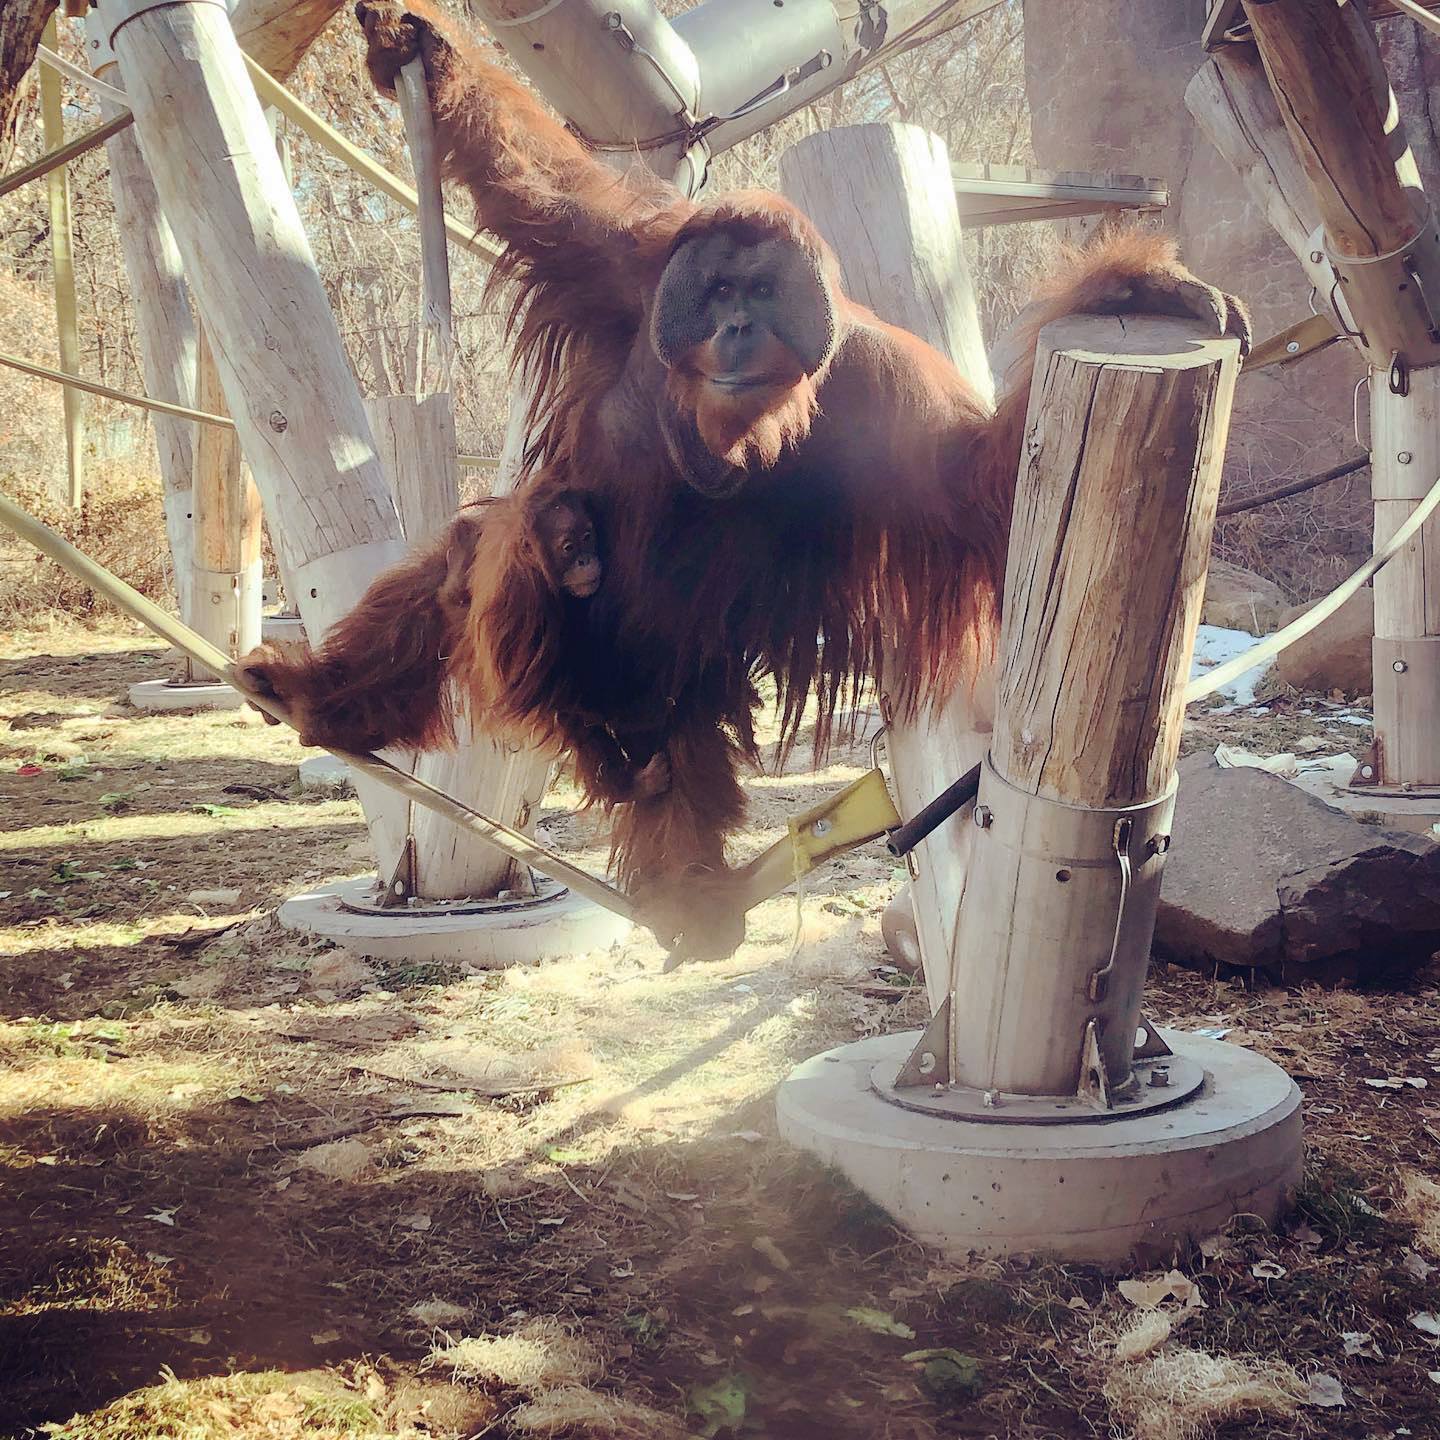 Berani y Cerah, los orangutanes de Sumatra